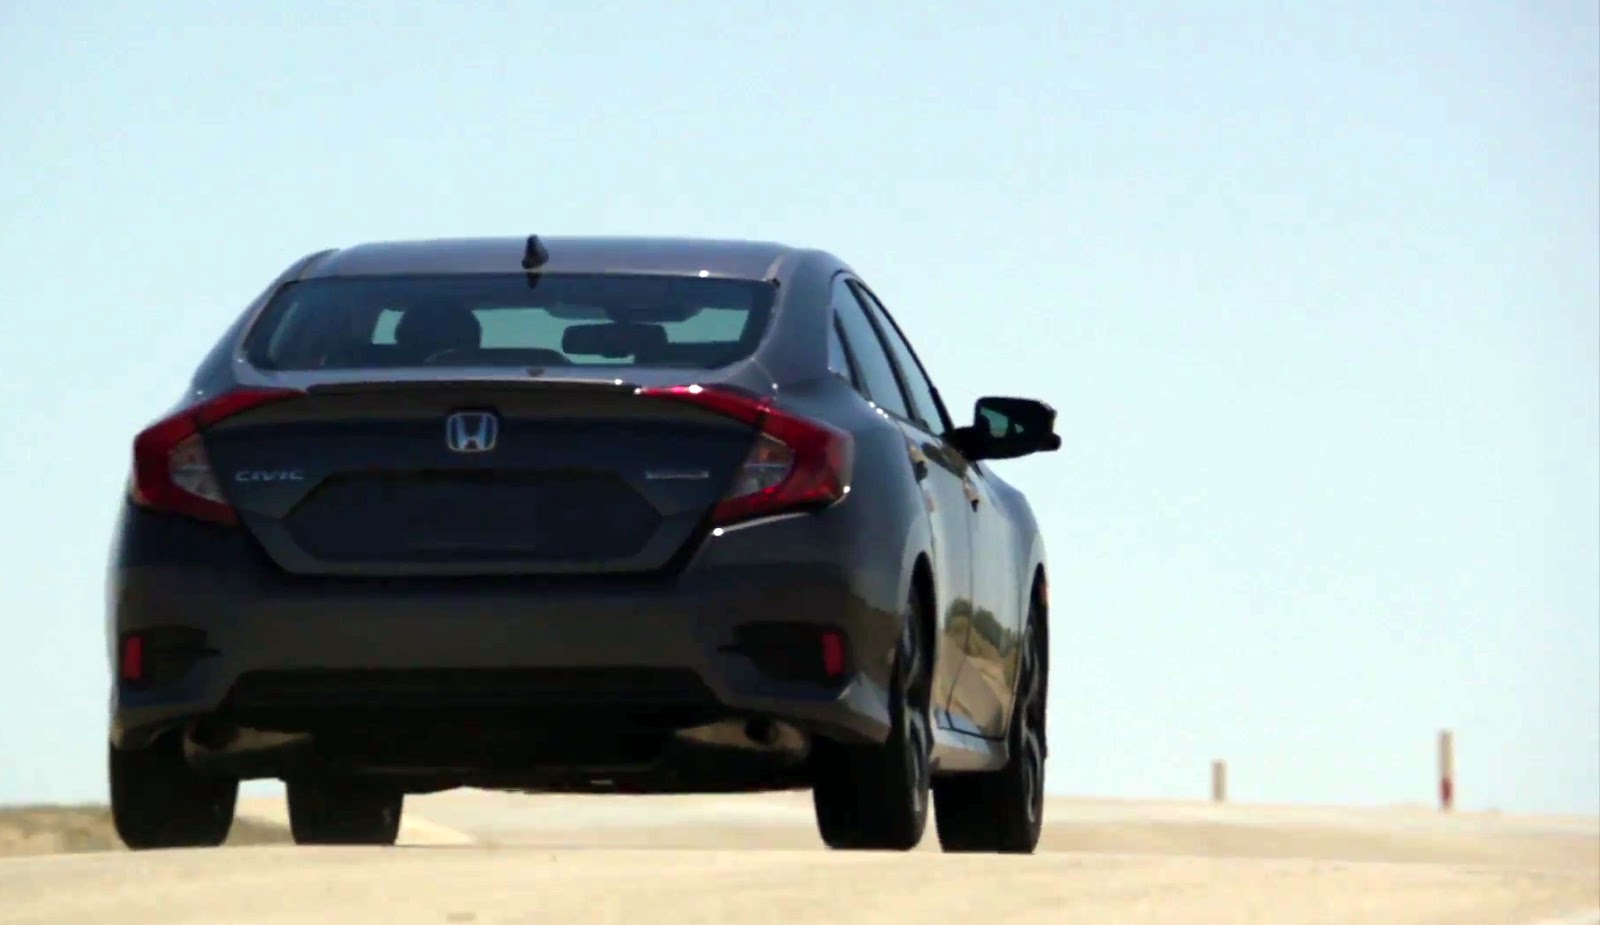 Honda Civic thế hệ mới “lột xác” hoàn toàn chính thức trình làng